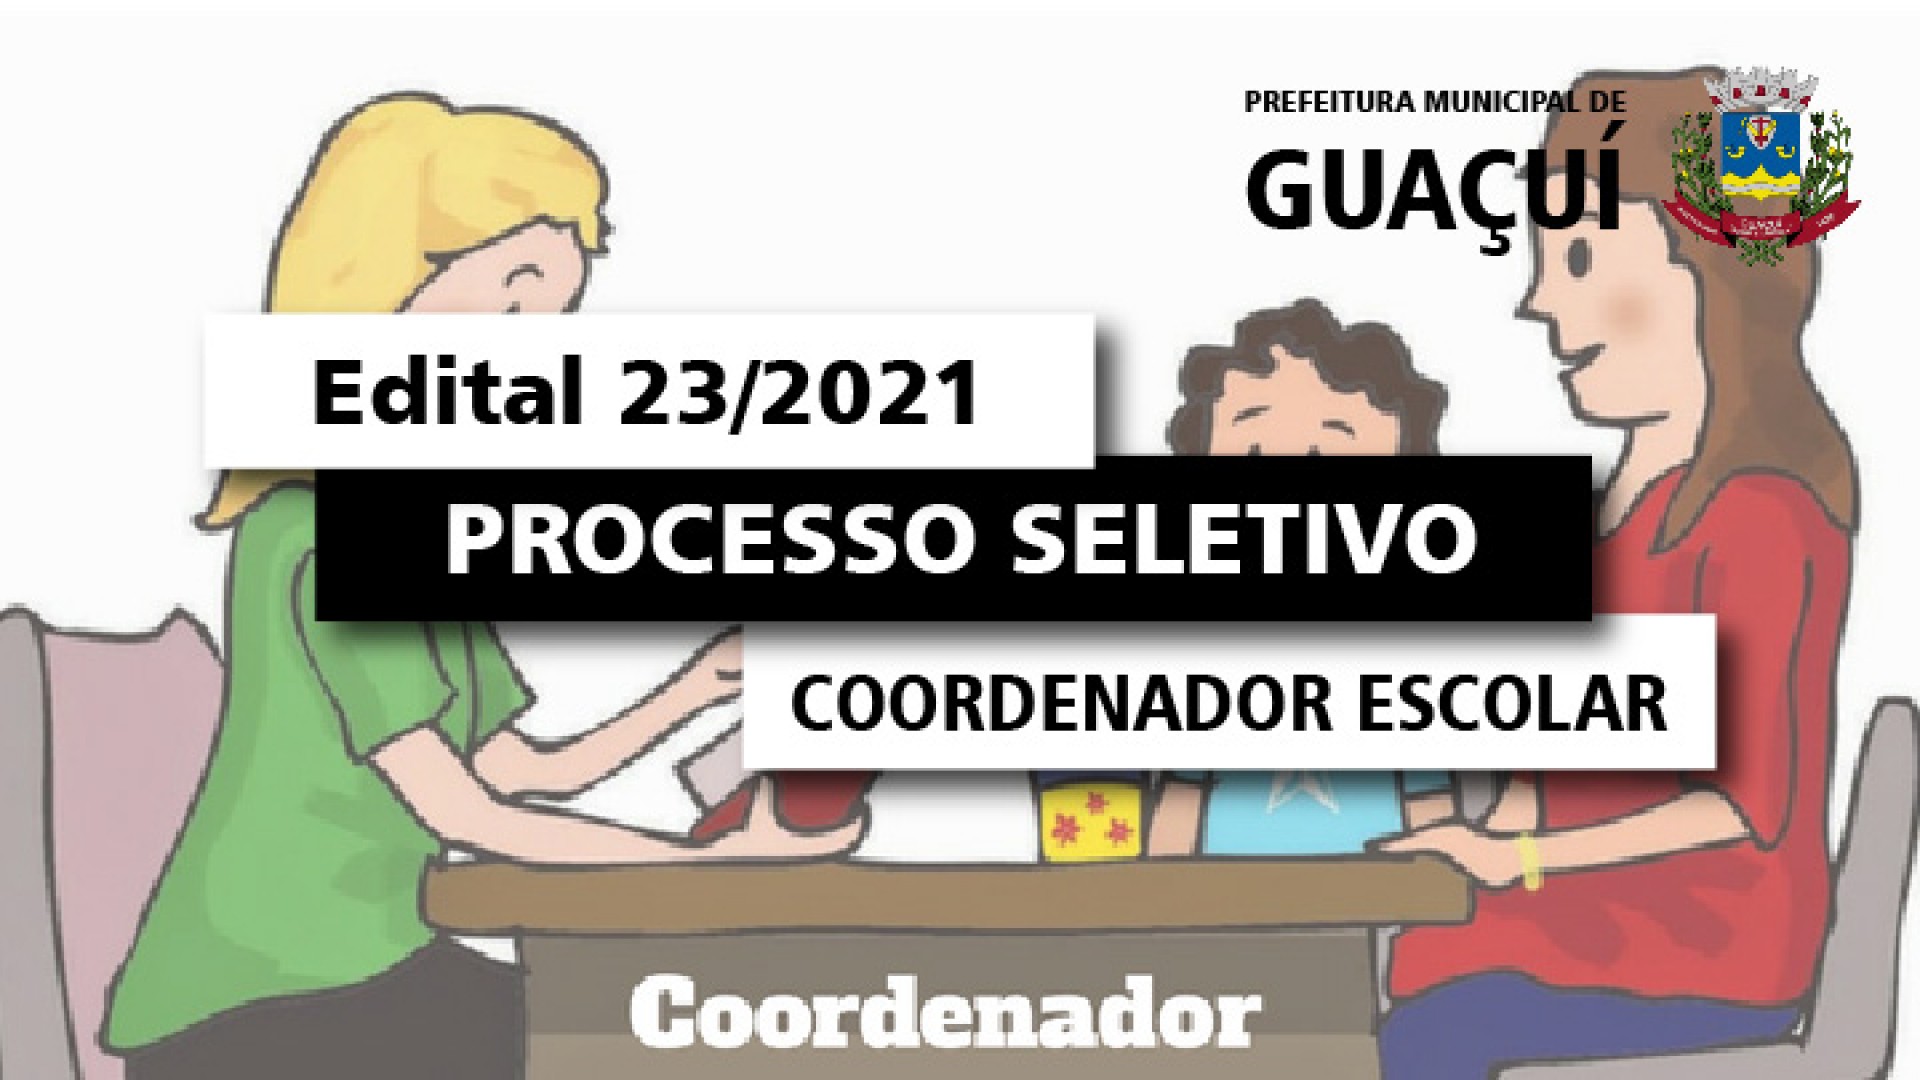 EDITAL EDUCAÇÃO Nº 023/2021 - COORDENADOR ESCOLAR